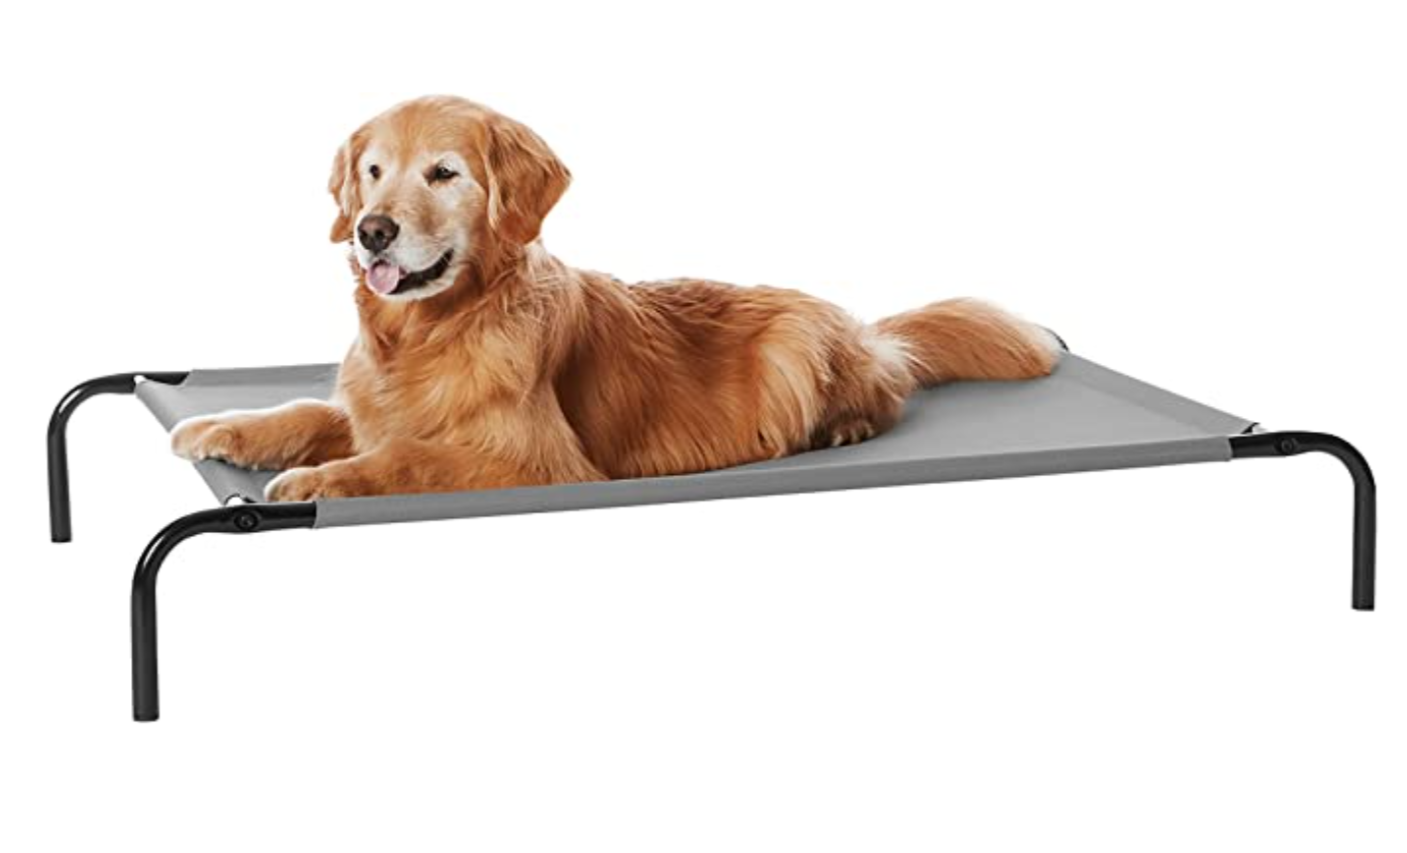 7. Amazon Basics Cooling Elevated Dog Bed